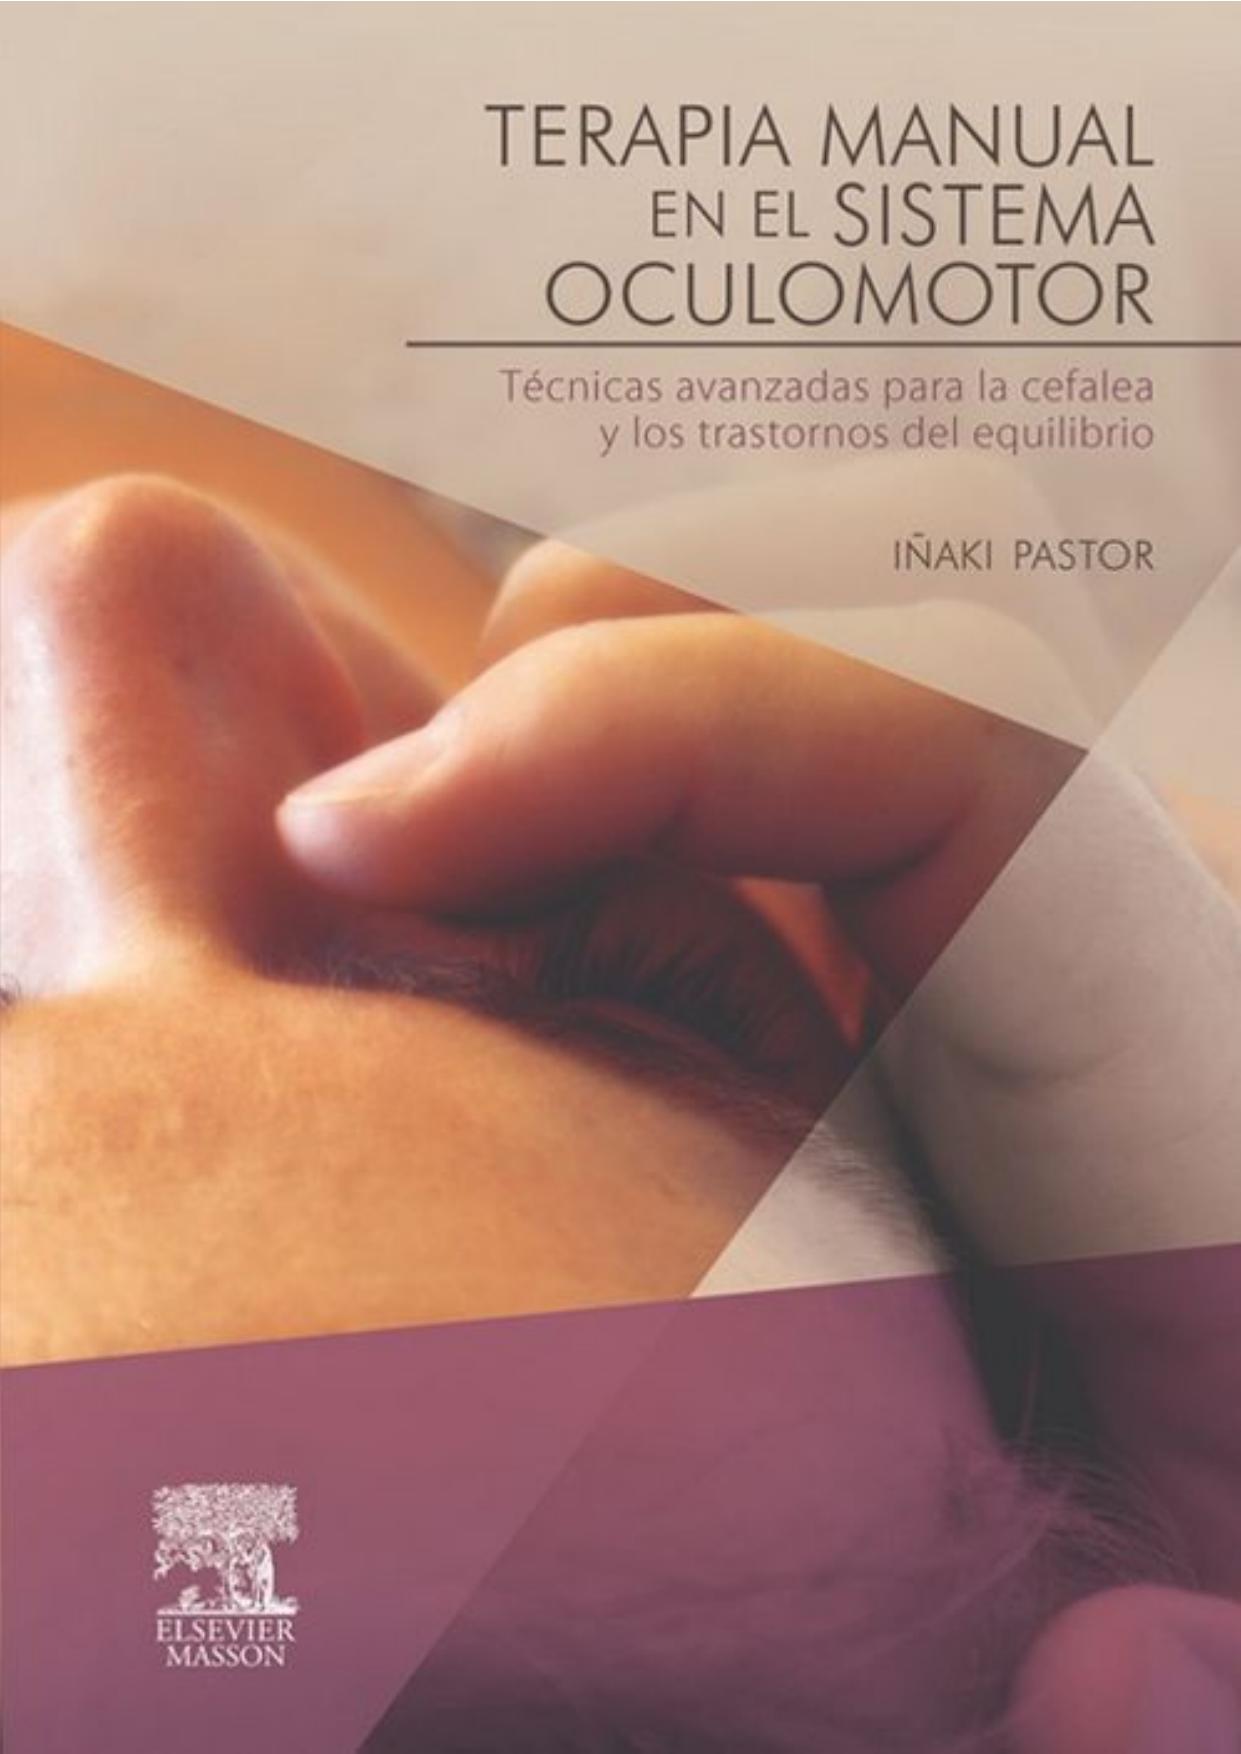 Terapia manual en el sistema oculomotor: Técnicas avanzadas para la cefalea y los trastornos del equilibrio (Spanish Edition)